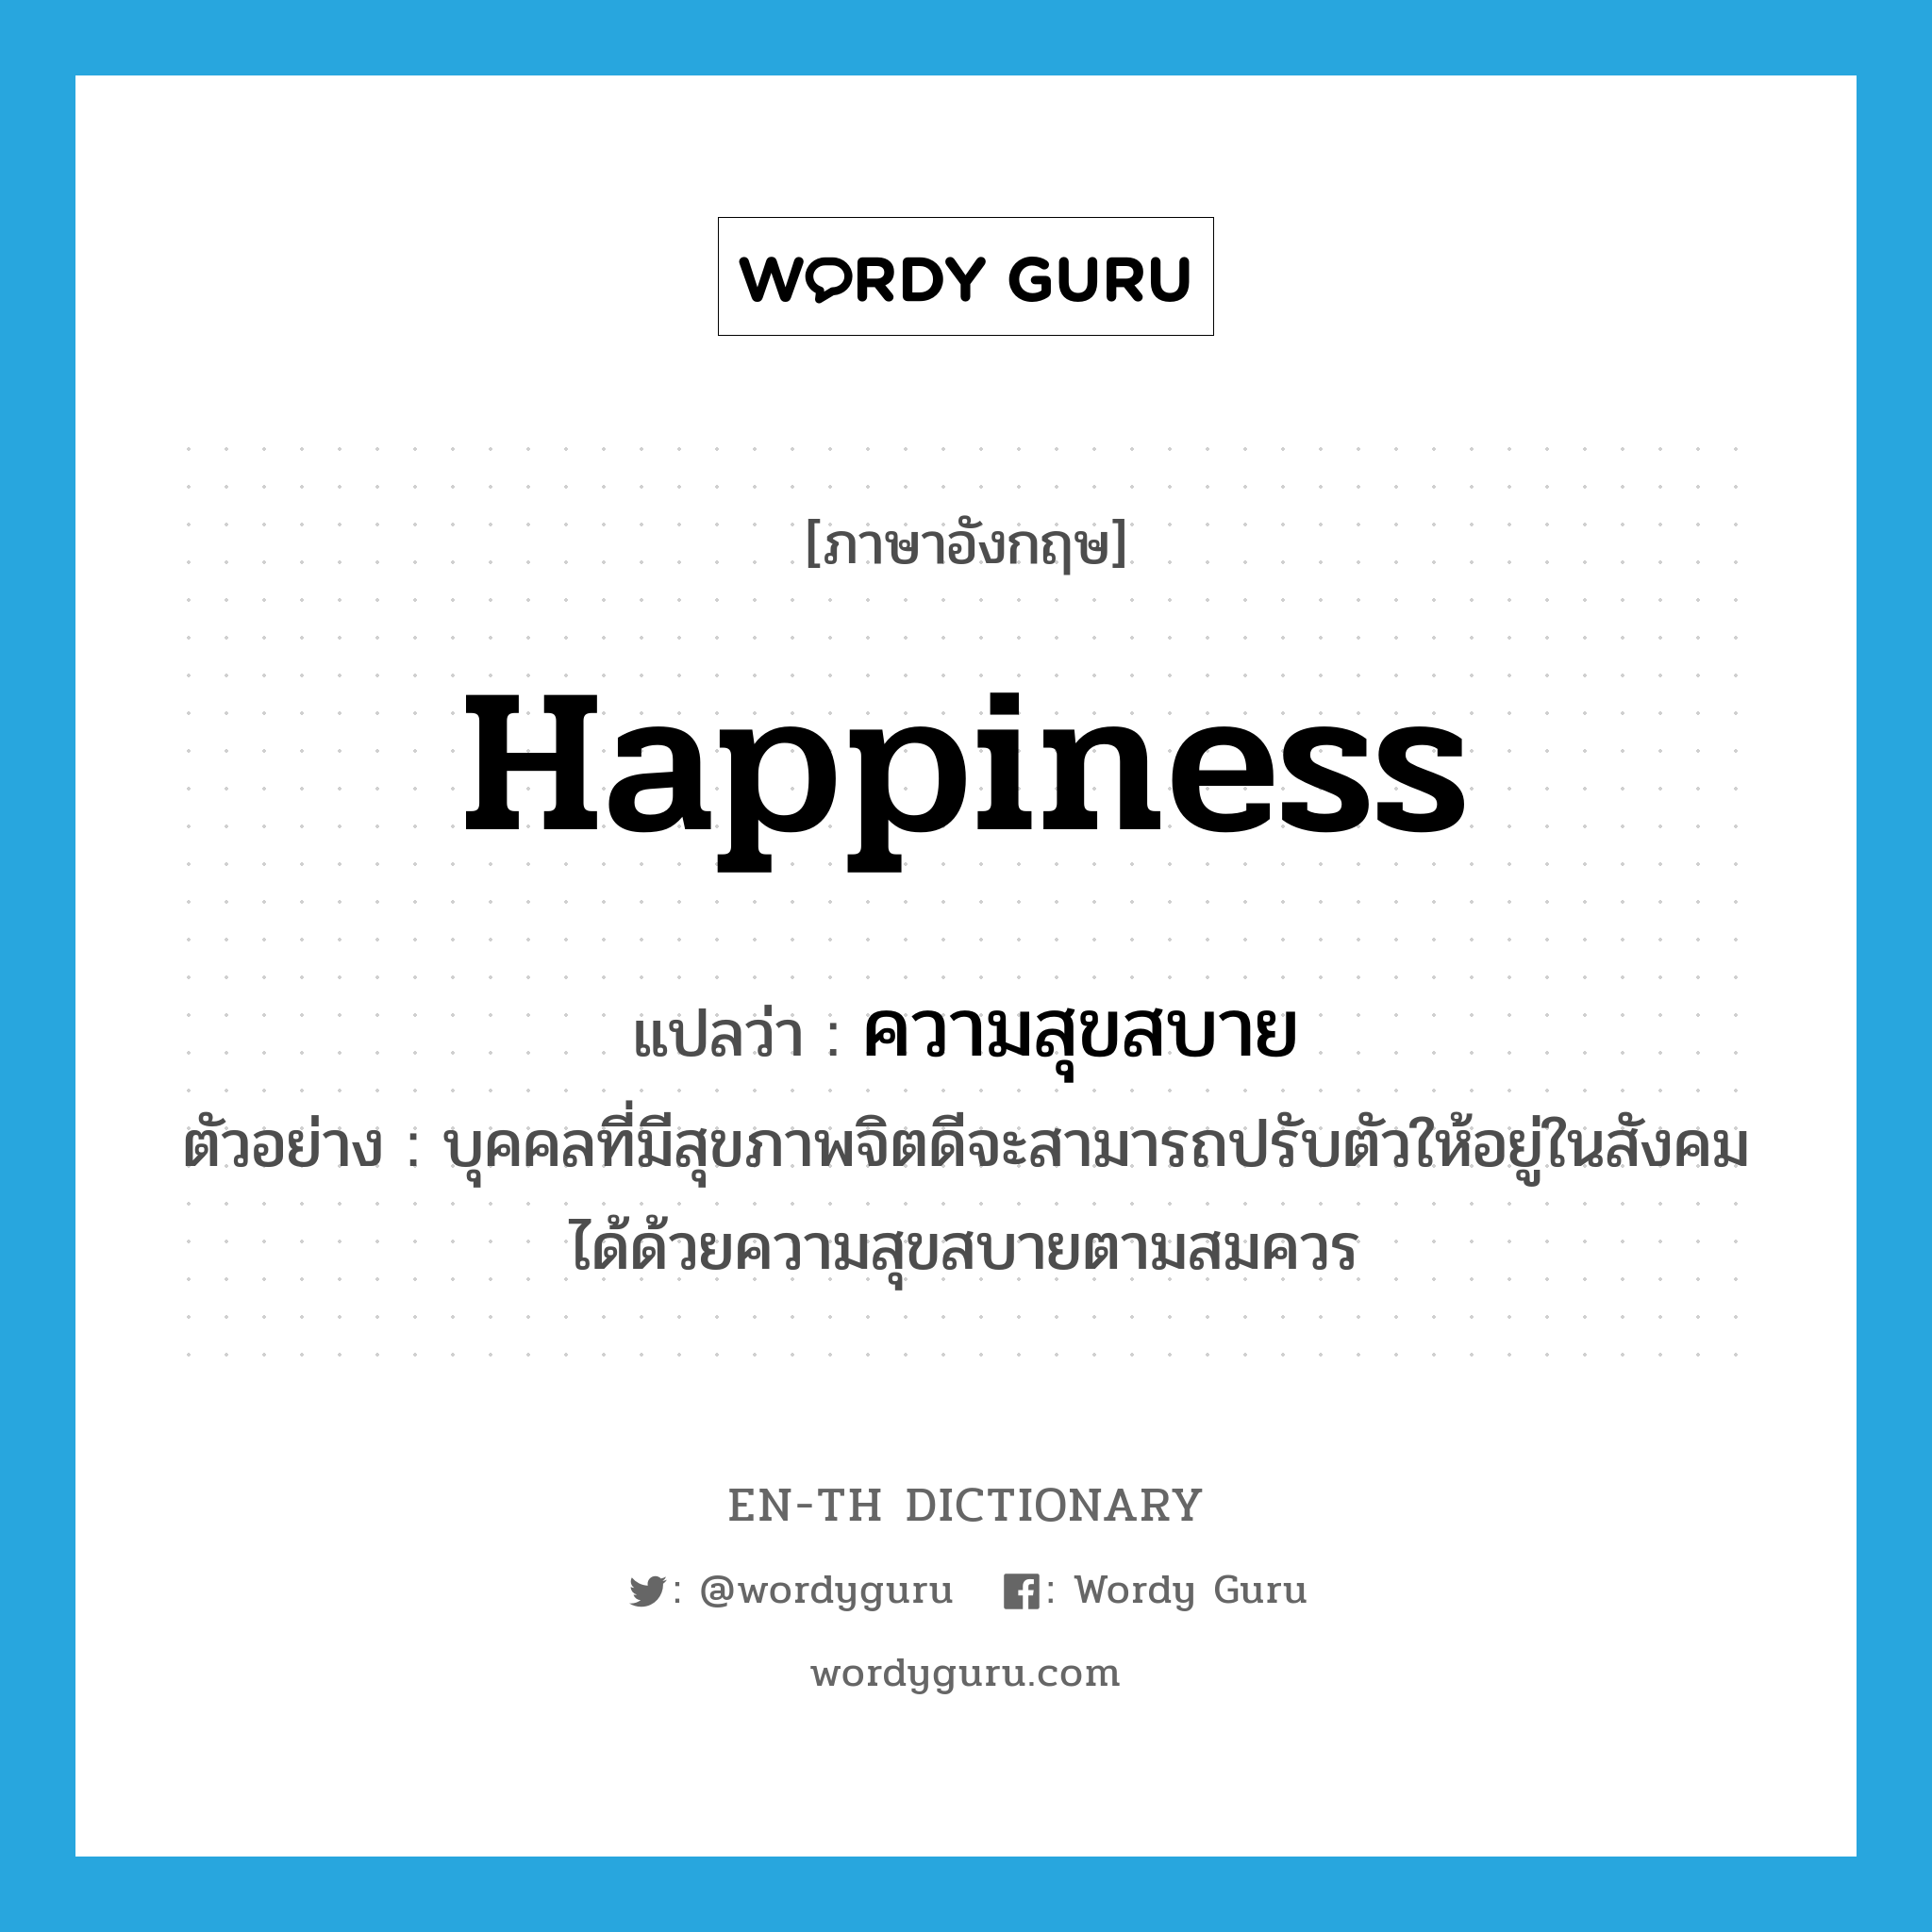 ความสุขสบาย ภาษาอังกฤษ?, คำศัพท์ภาษาอังกฤษ ความสุขสบาย แปลว่า happiness ประเภท N ตัวอย่าง บุคคลที่มีสุขภาพจิตดีจะสามารถปรับตัวให้อยู่ในสังคมได้ด้วยความสุขสบายตามสมควร หมวด N